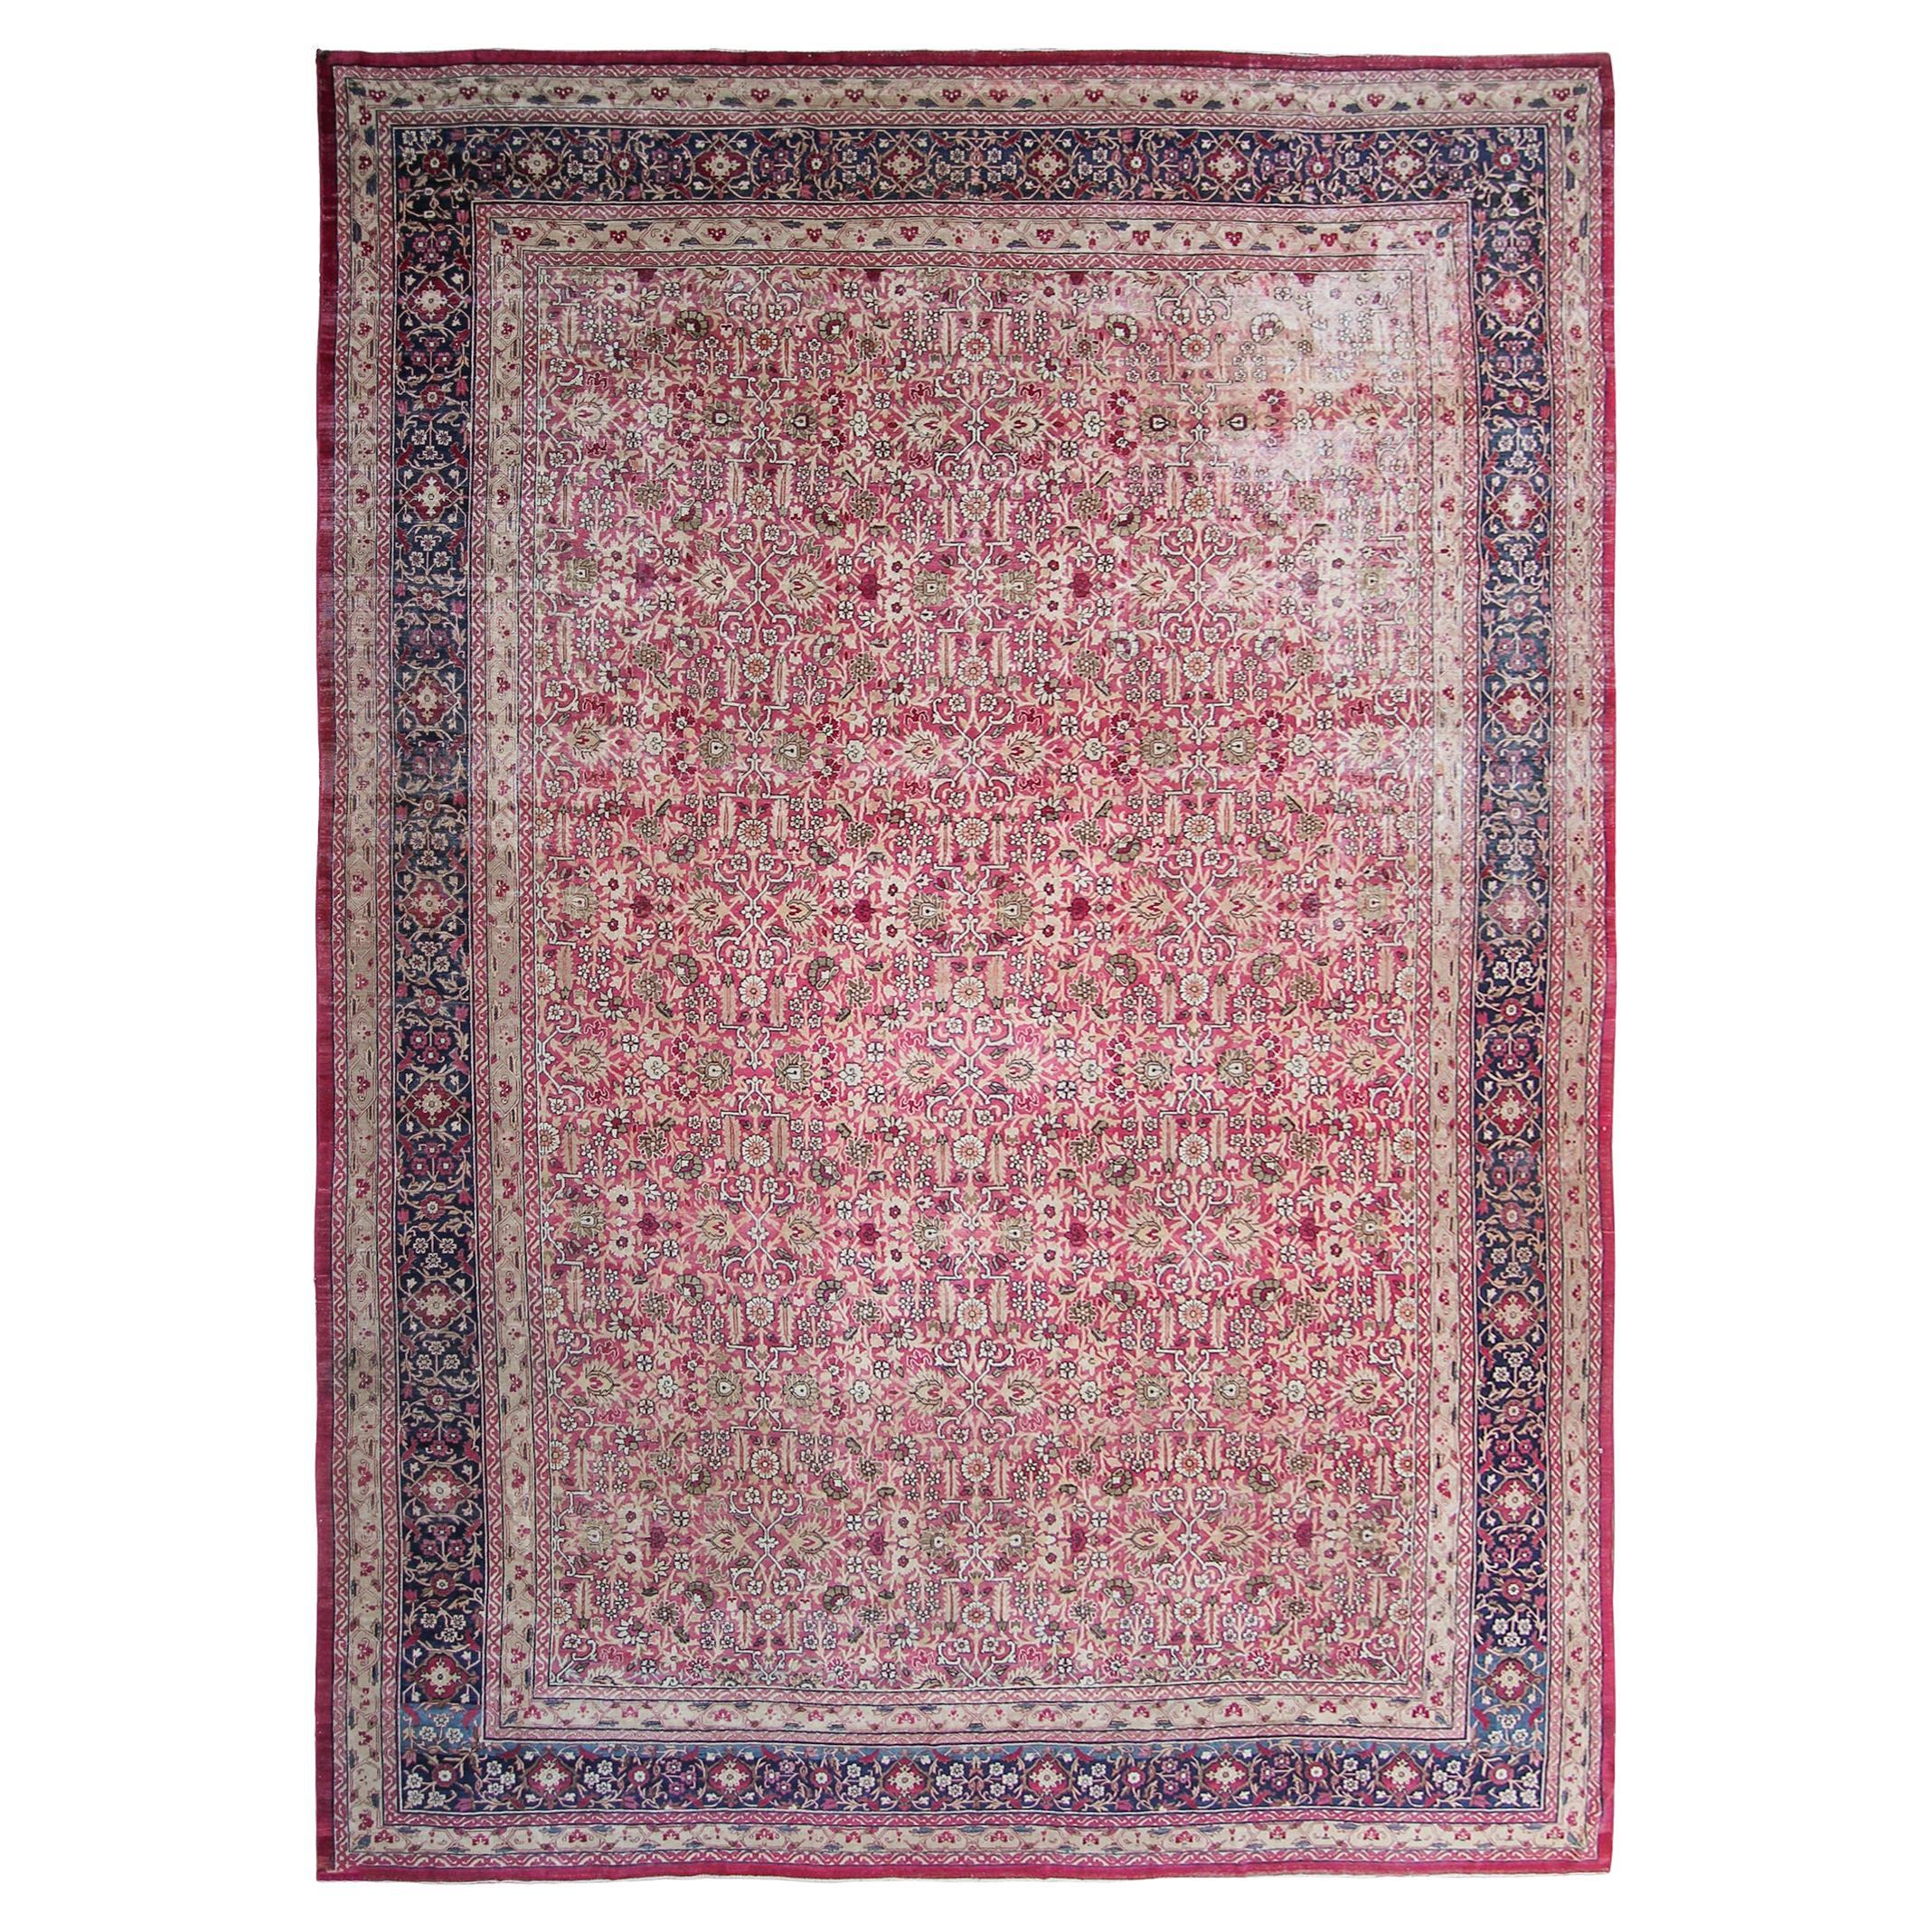 c1870 Pink Antique Lavar Kermanshah Fine Geometric Rug 11x17ft 138cm x 519cm For Sale